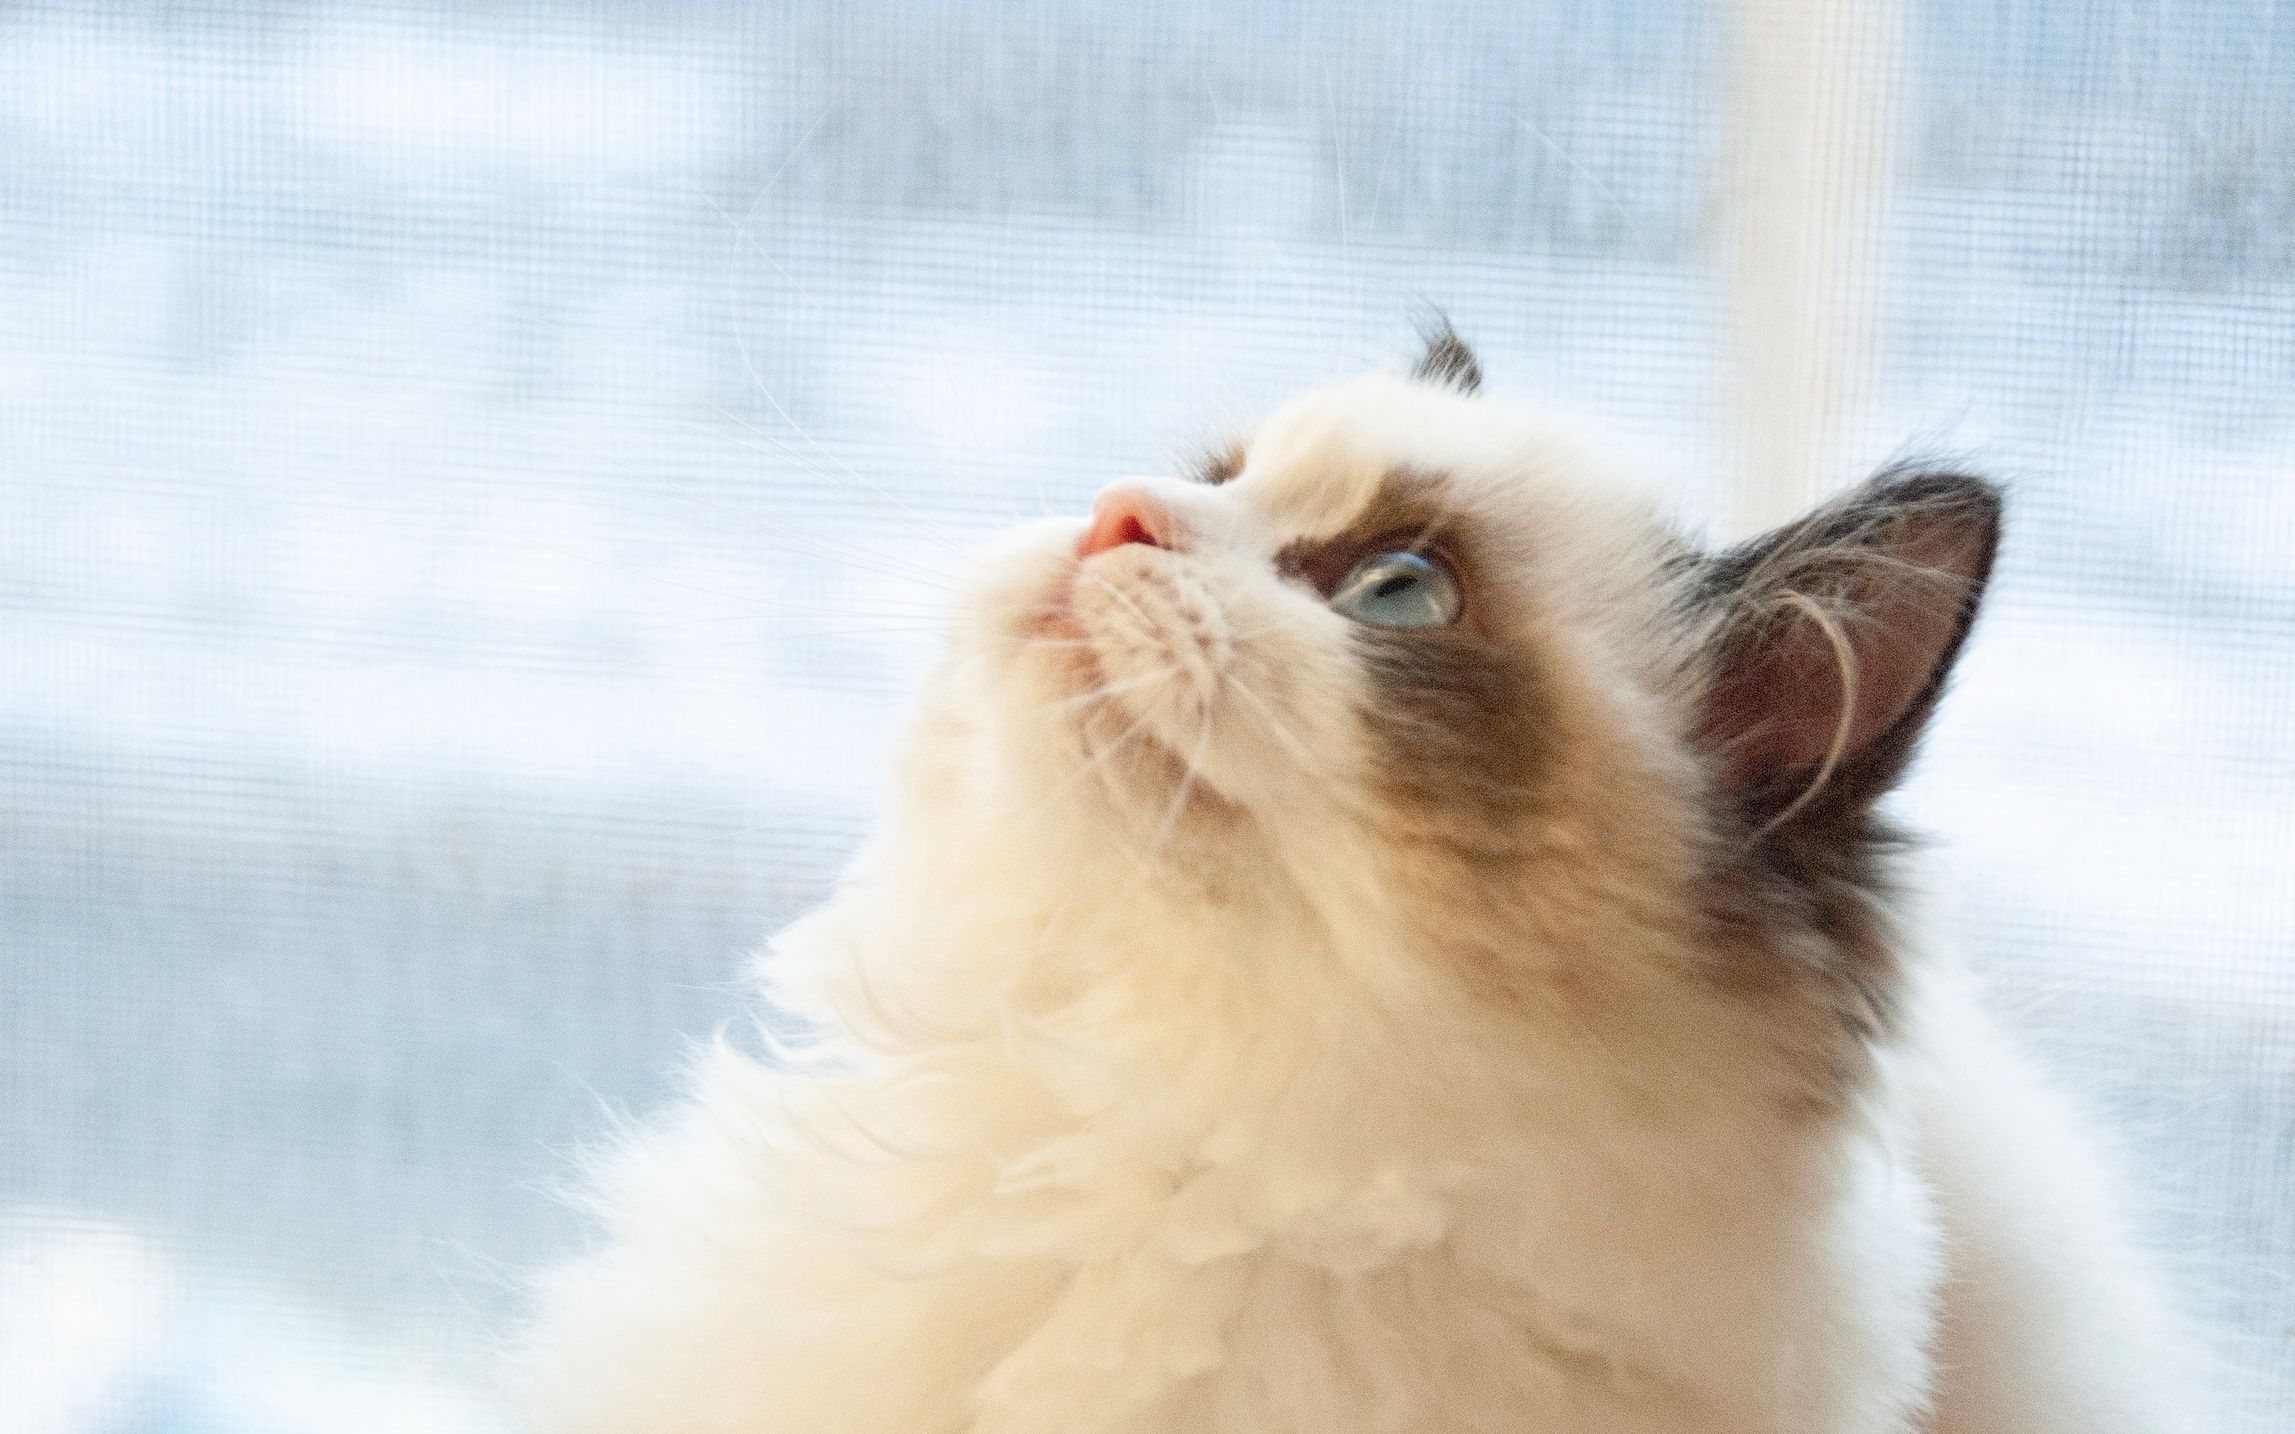 布偶猫千粉图集来了欣赏布偶猫的盛世美颜